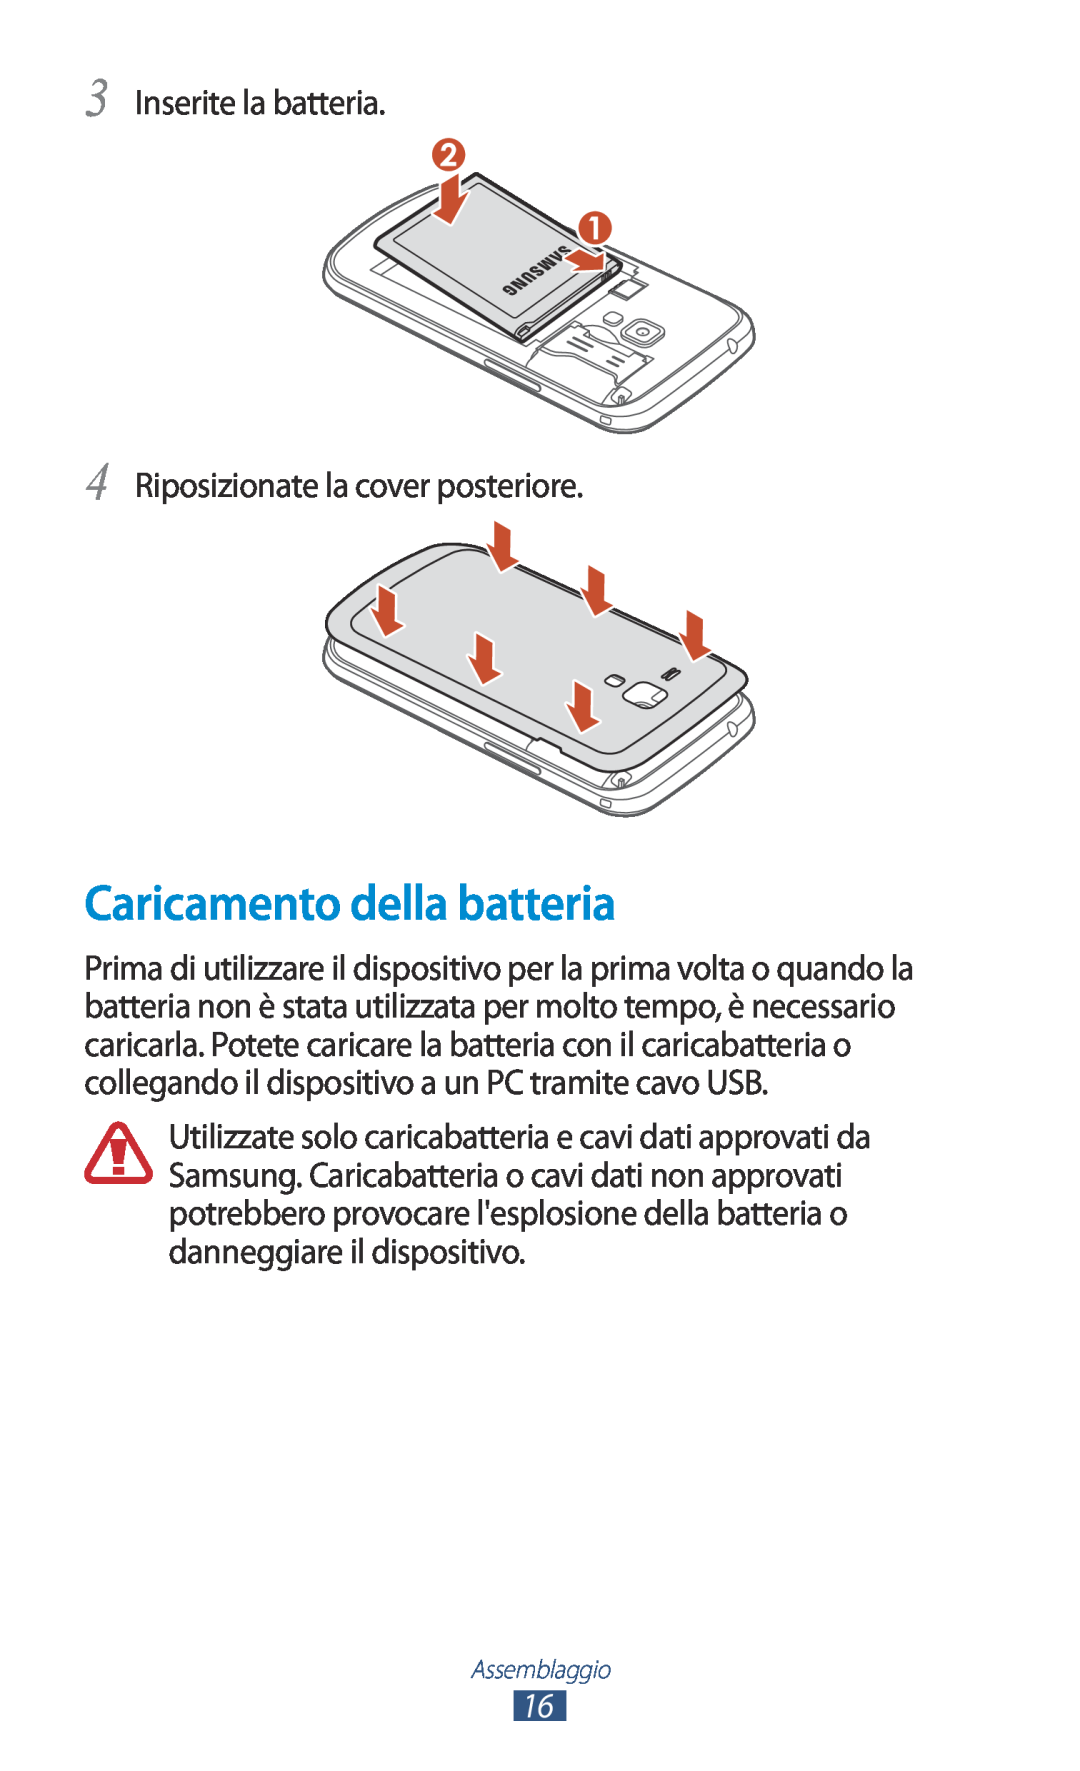 Samsung GT-S7560UWAWIN, GT-S7560ZKAXEO Caricamento della batteria, Inserite la batteria Riposizionate la cover posteriore 